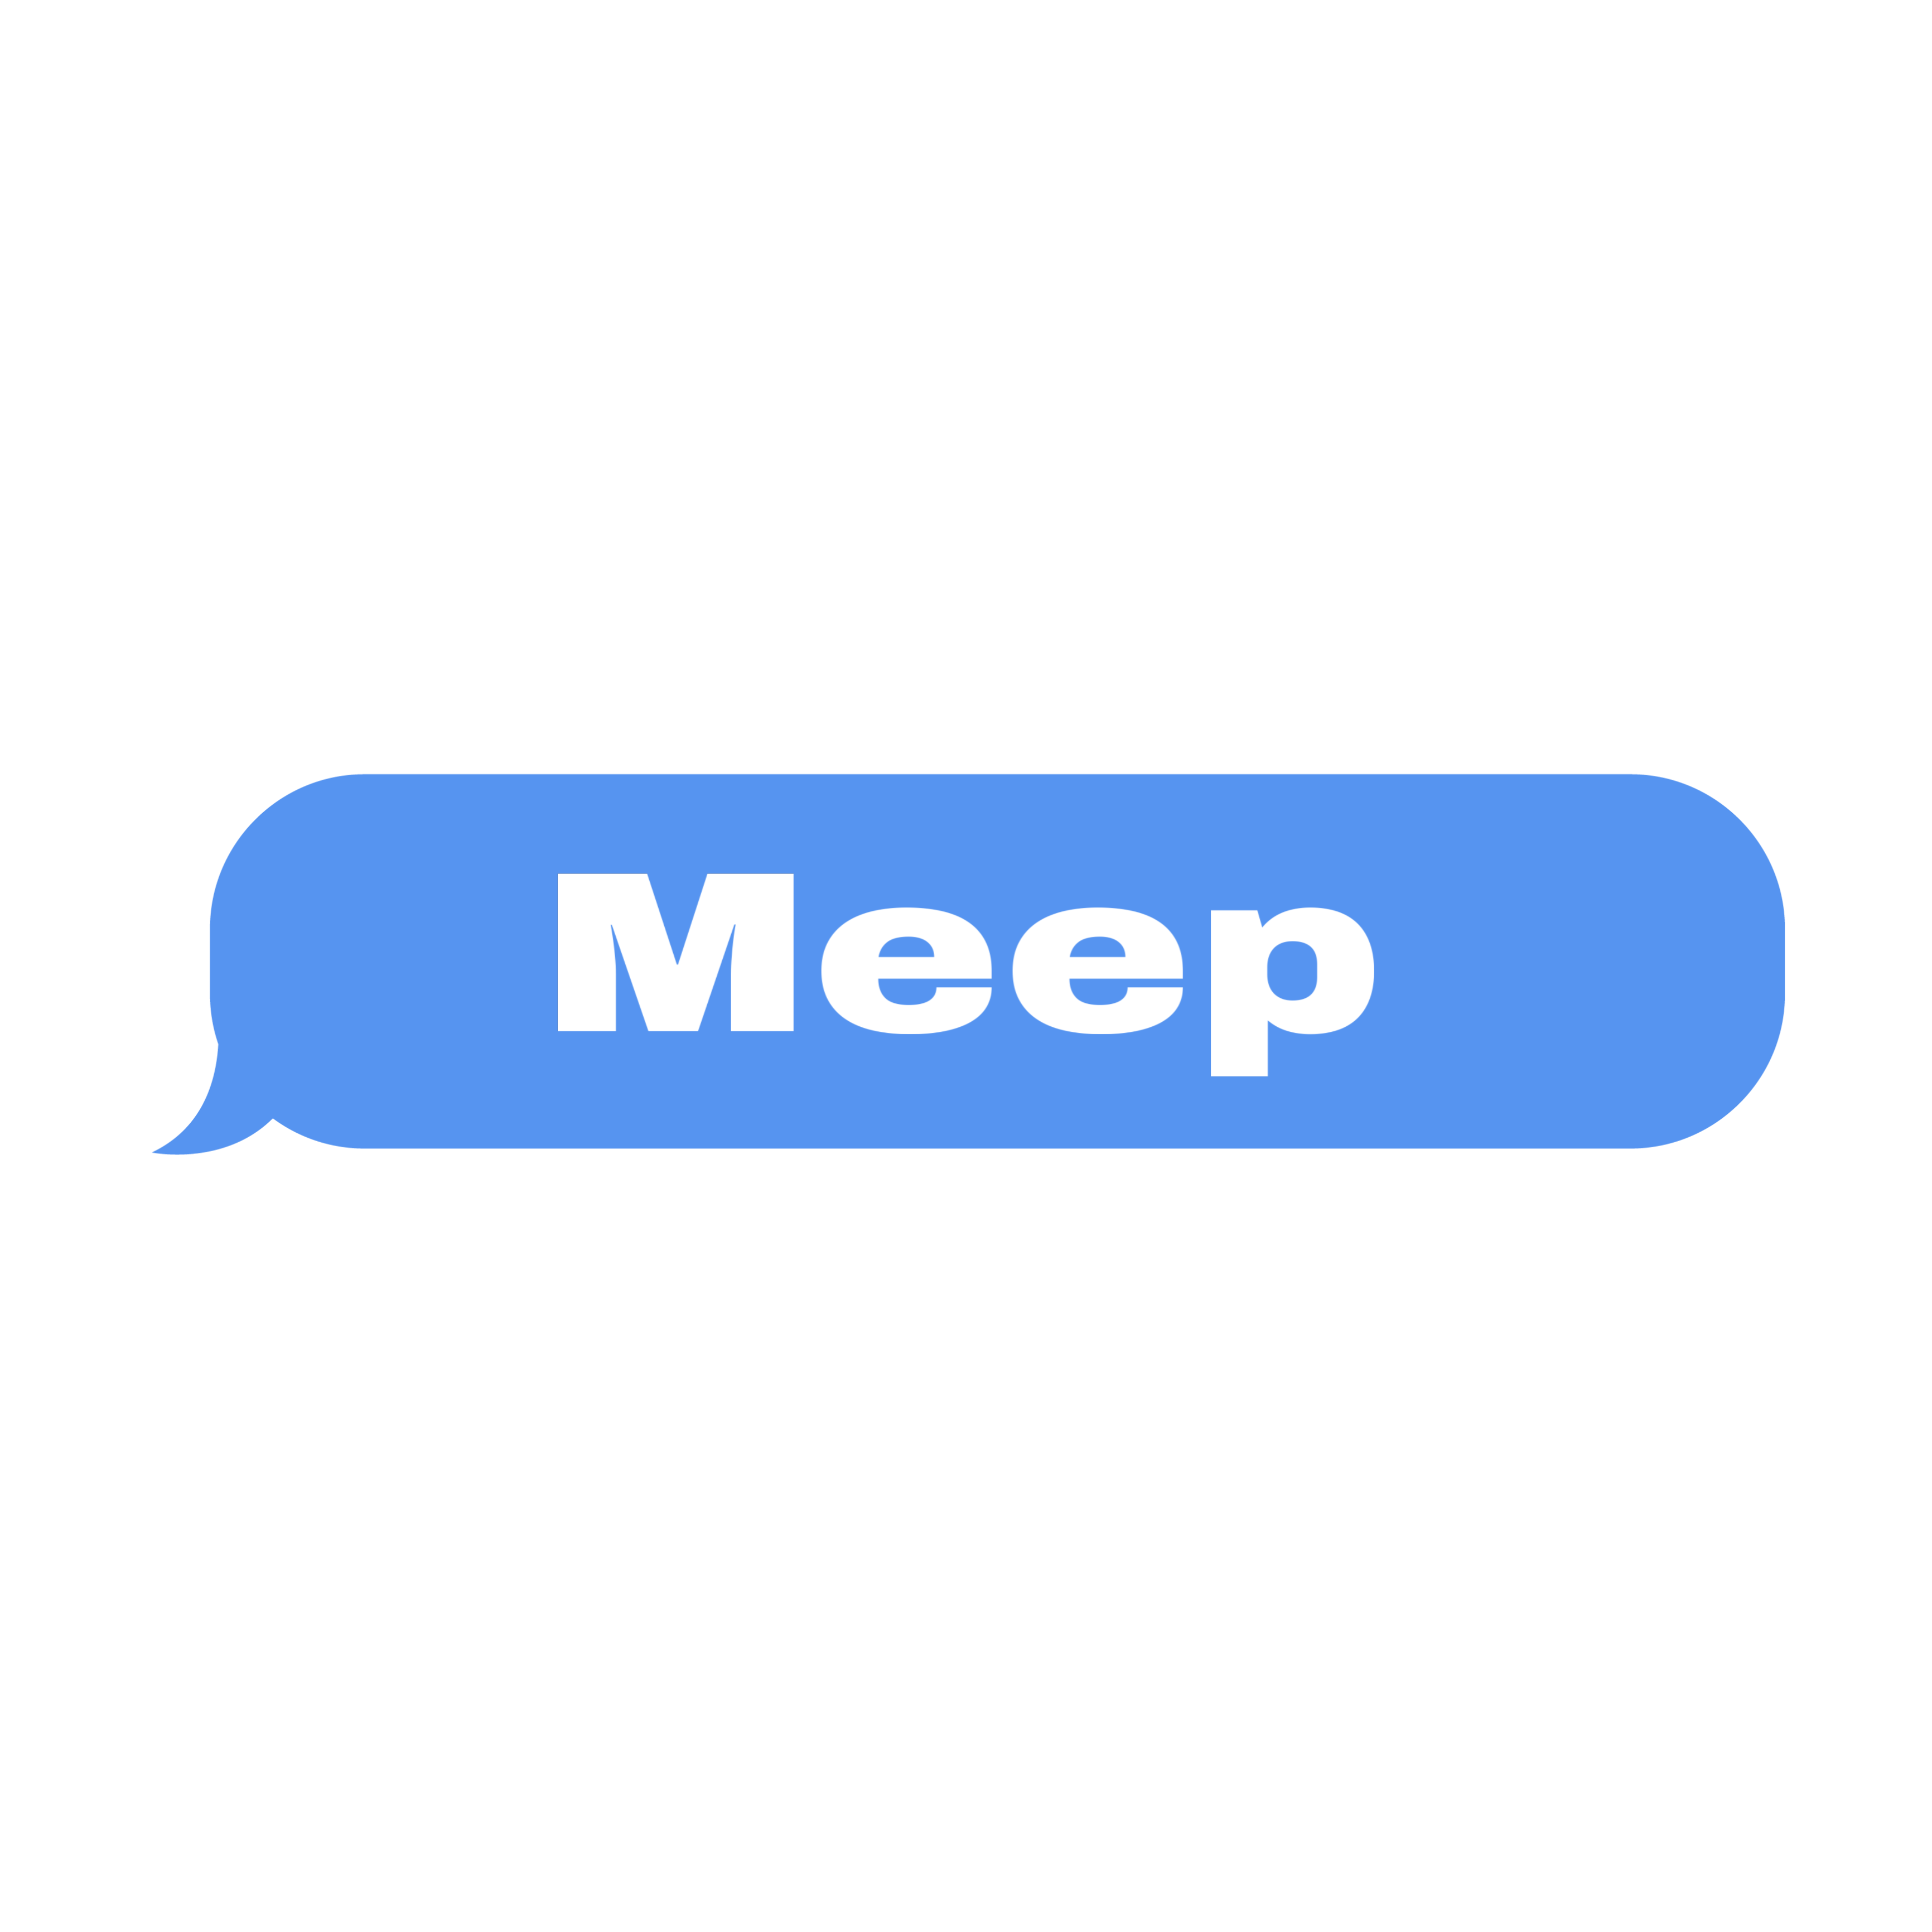 Meep Sticker By Zxstudios12